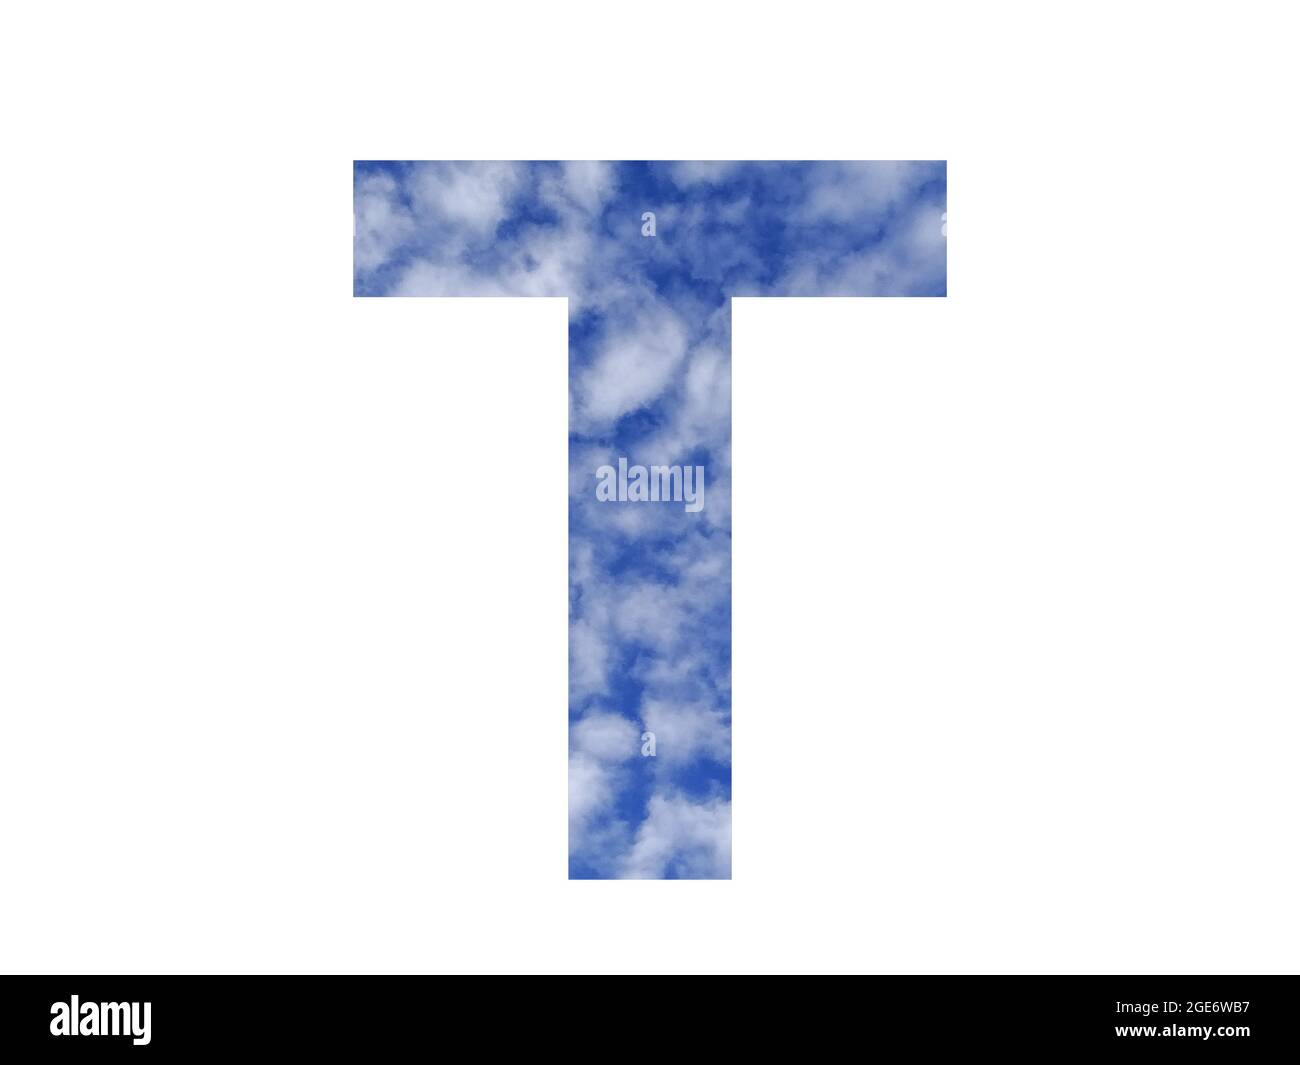 Lettera T dell'alfabeto fatta con cielo blu e nuvole bianche, isolata su sfondo bianco Foto Stock